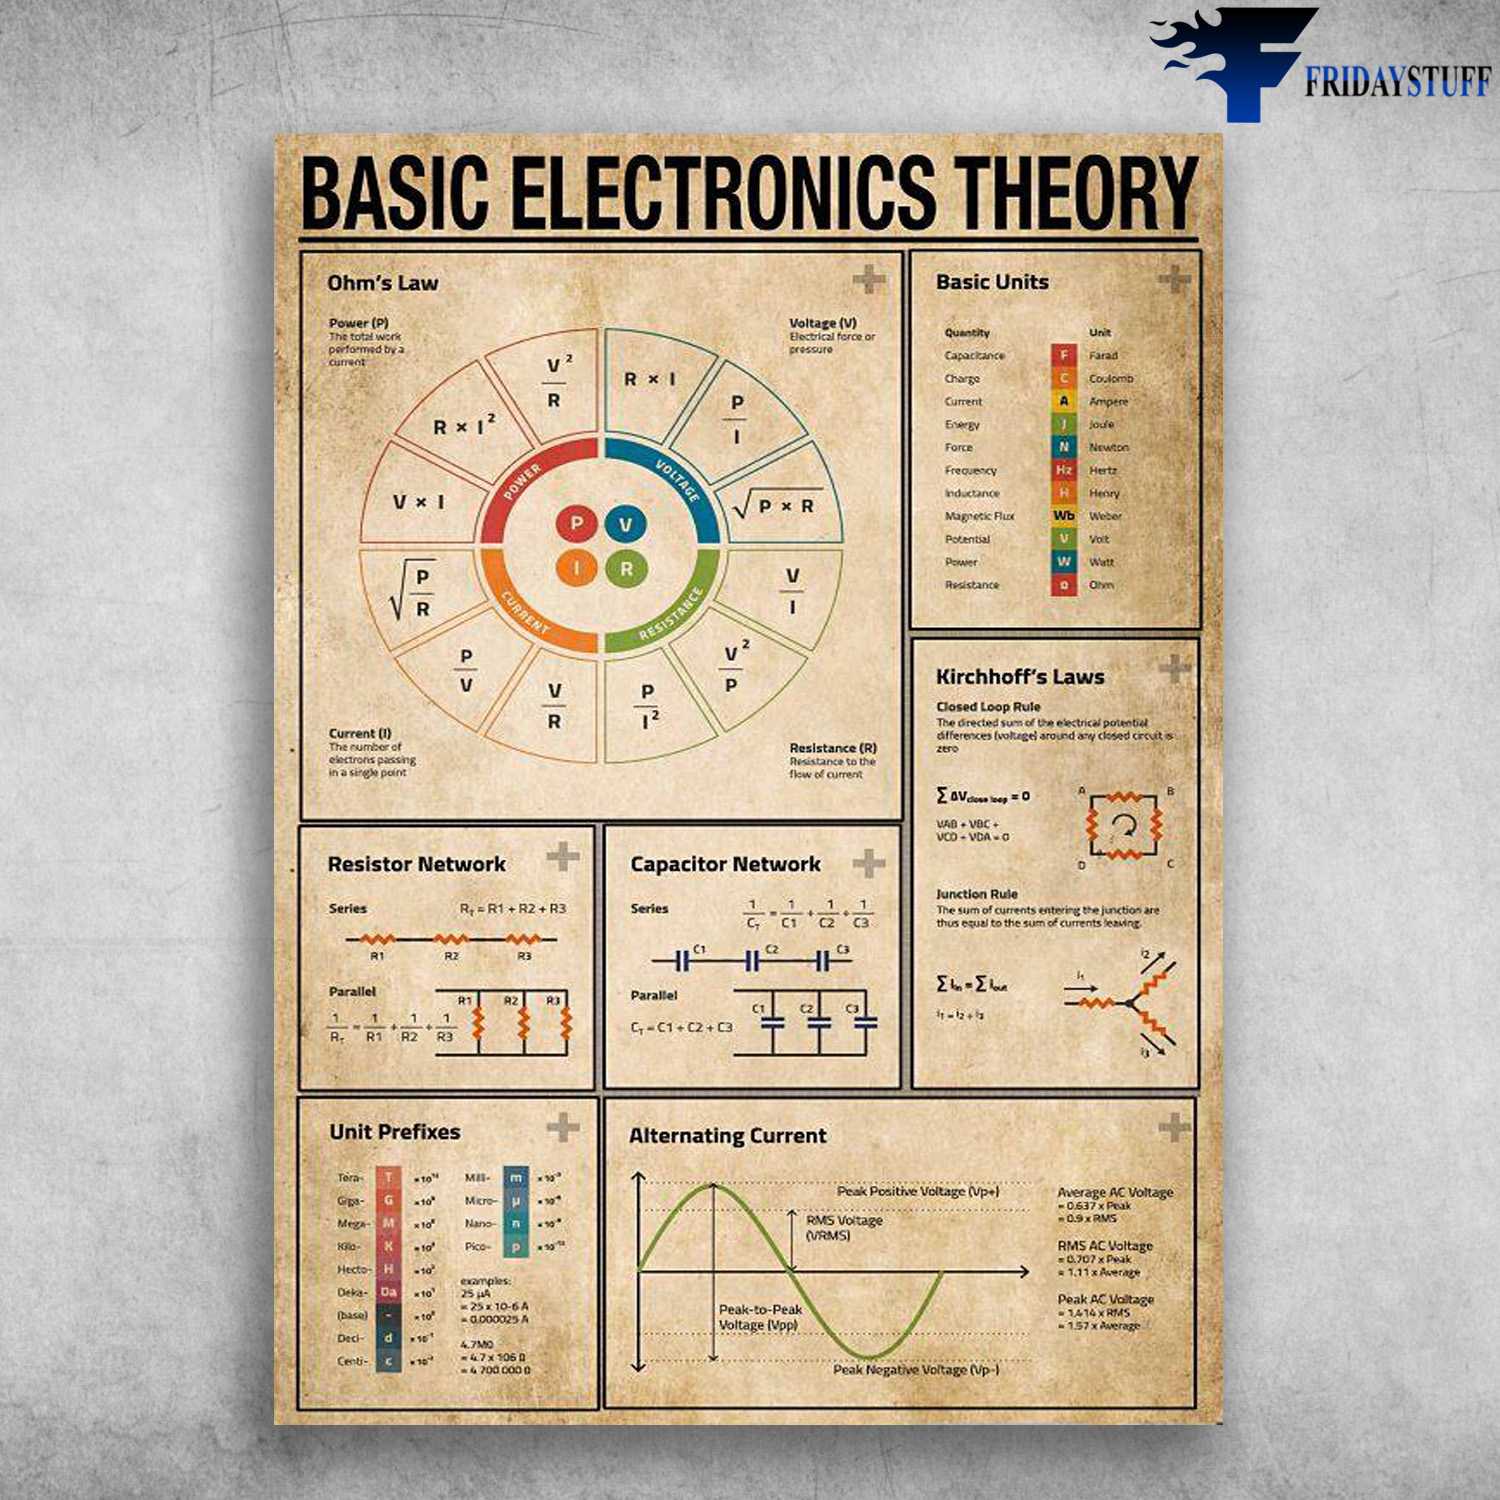 Basic Electronics Theory, Basic Units, Reslstor Network, Unit Profixes